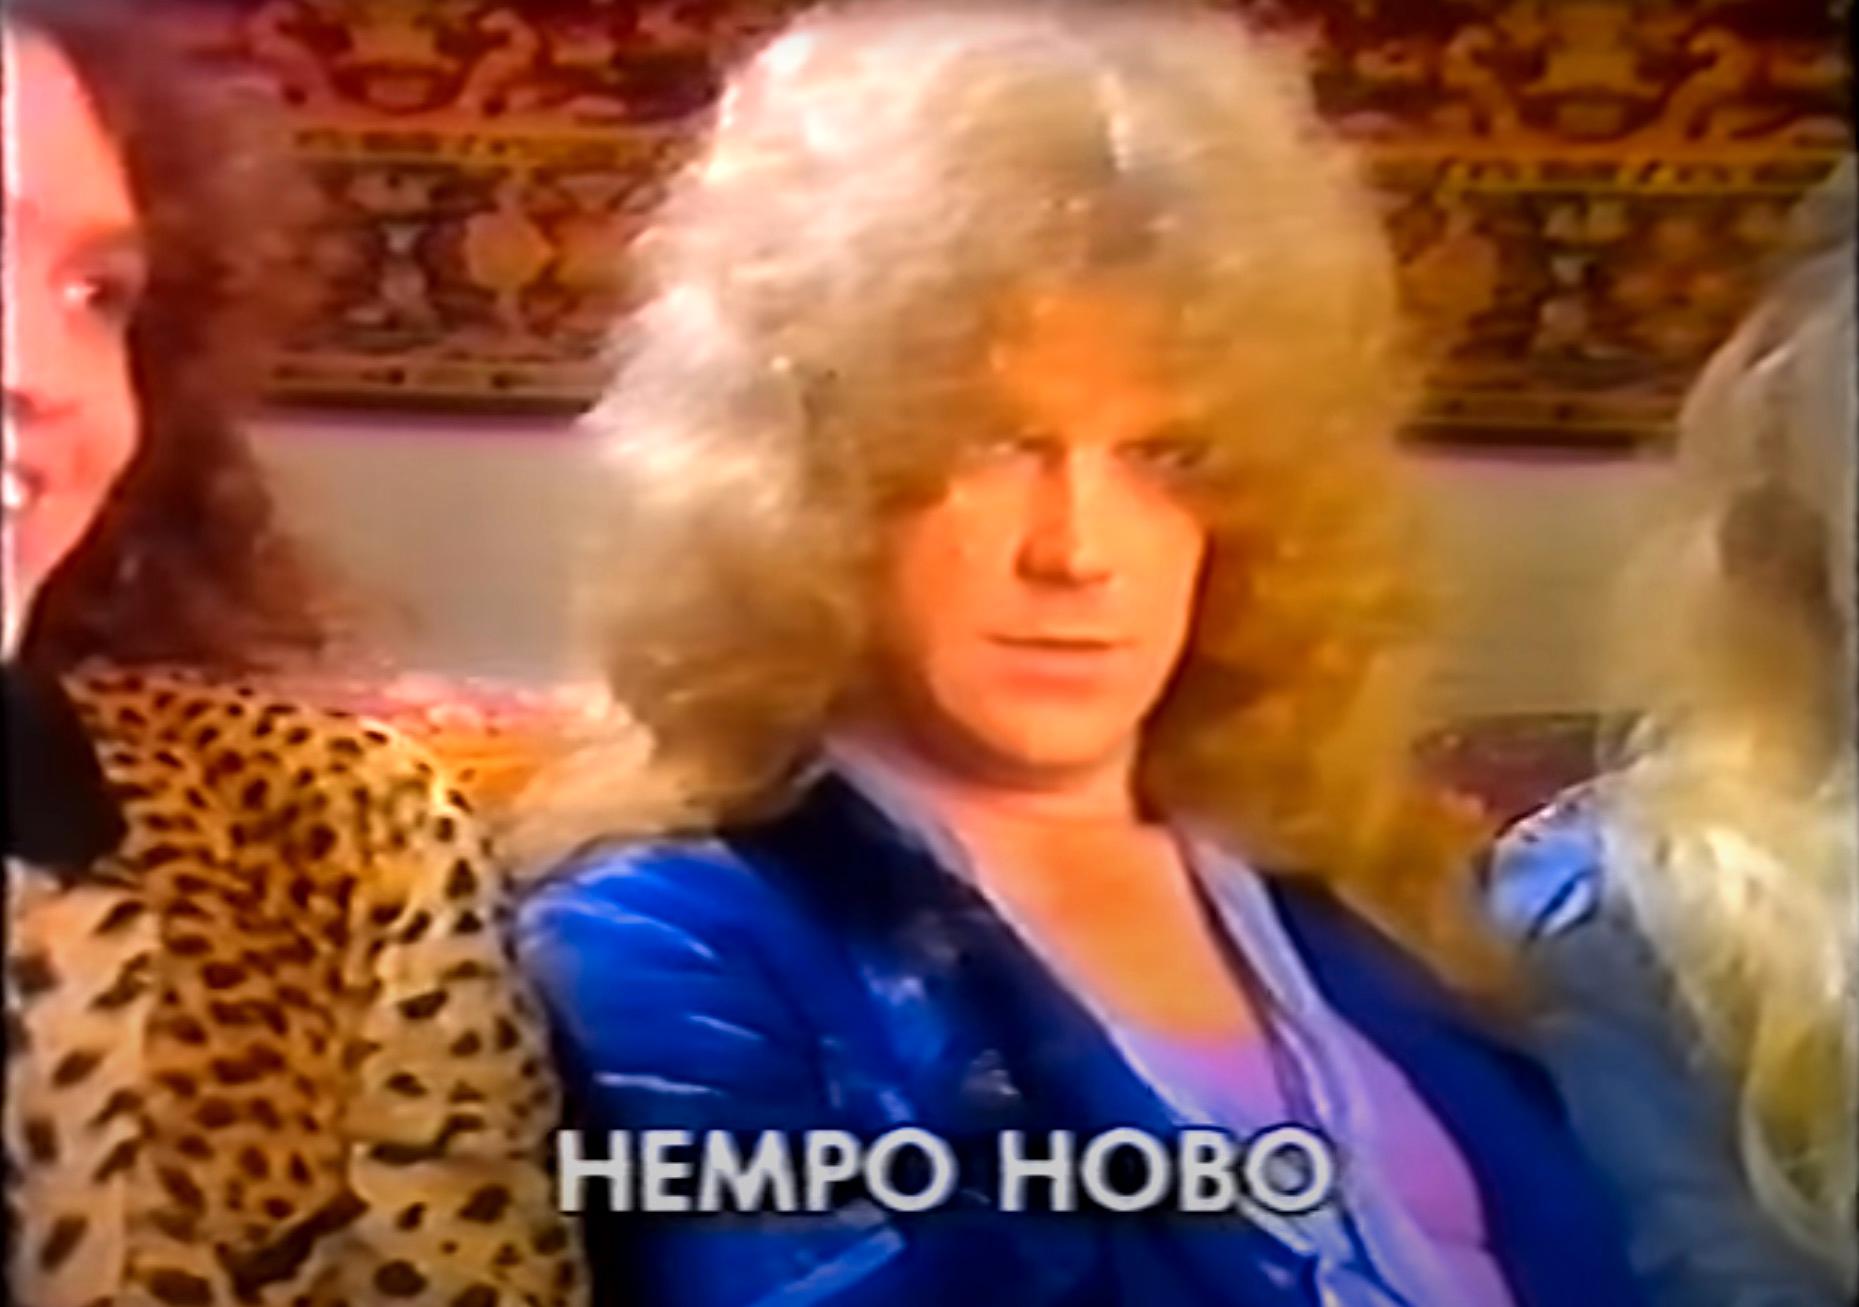 Hempo intervjuas i SVT 1984.